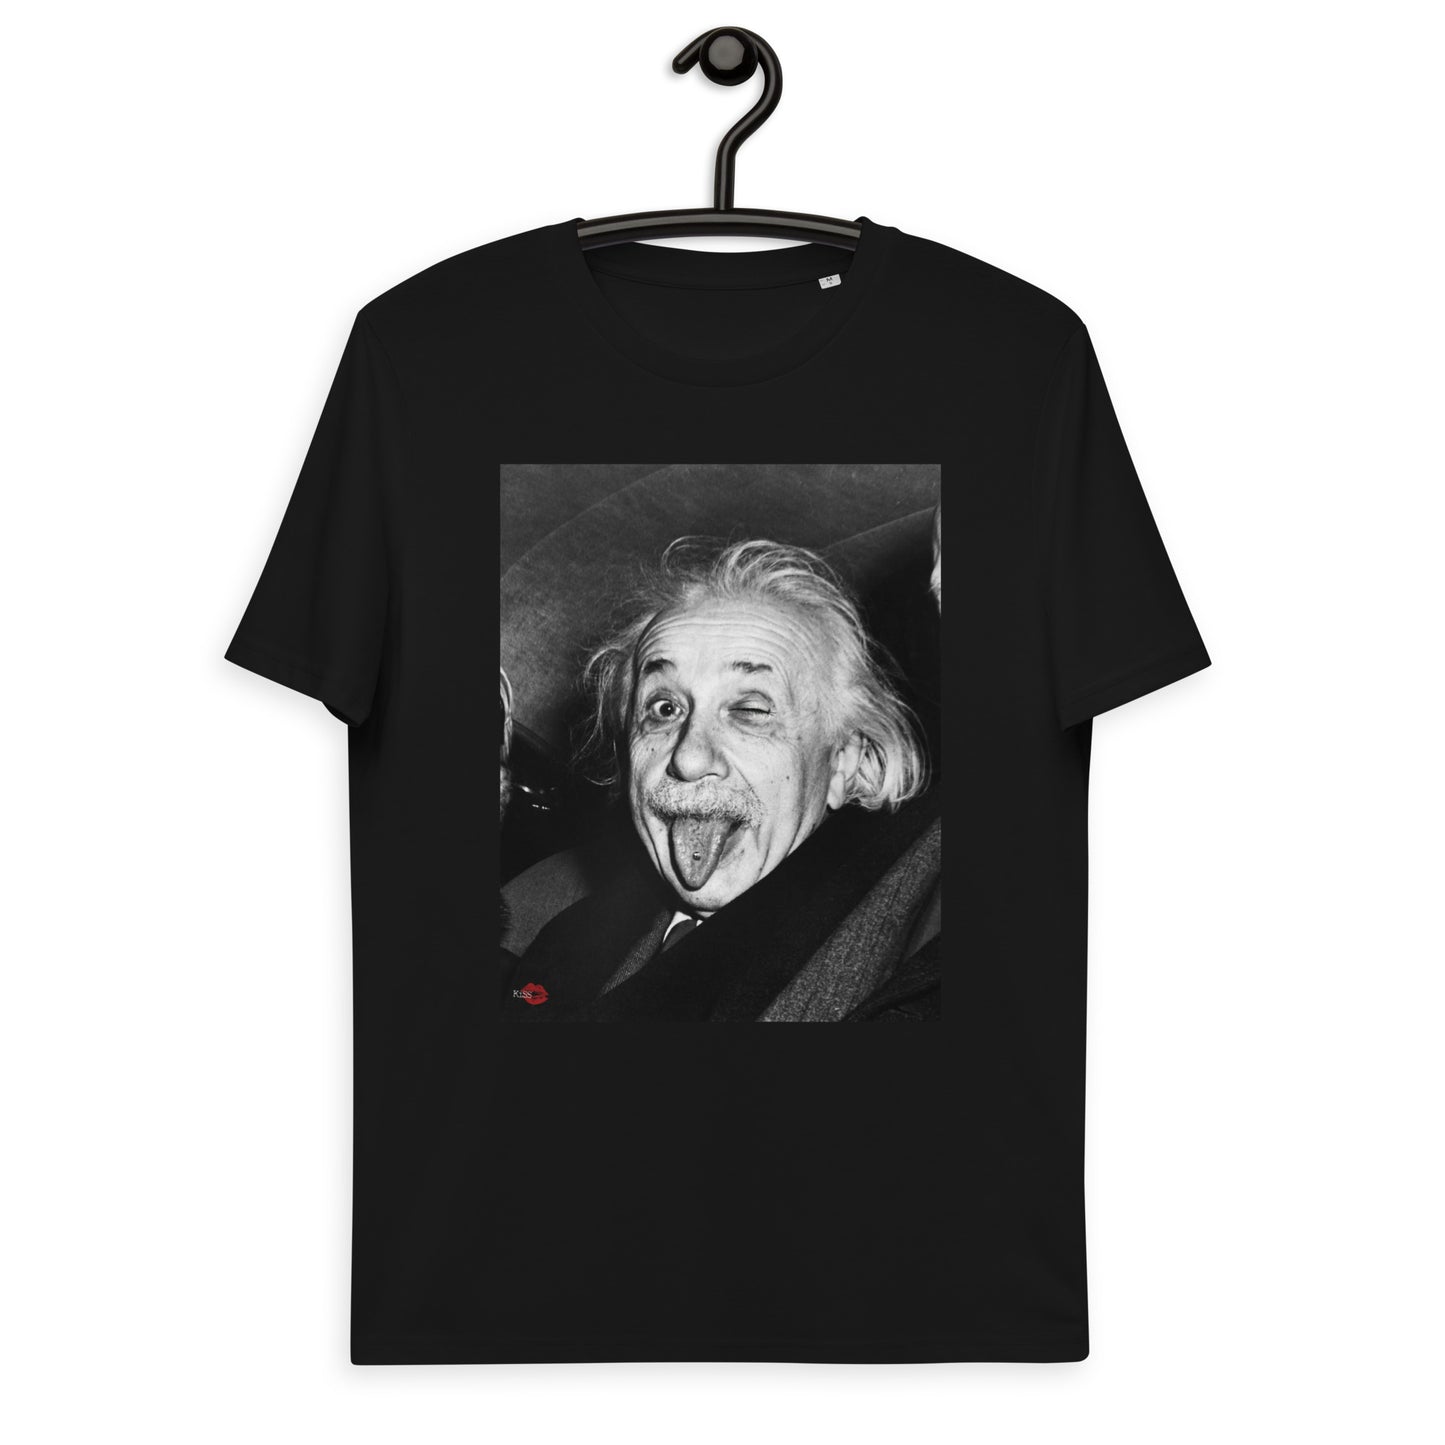 Albert Einstein Wink KiSS Unisex organic cotton t-shirt - Tongue Piercing Edit face